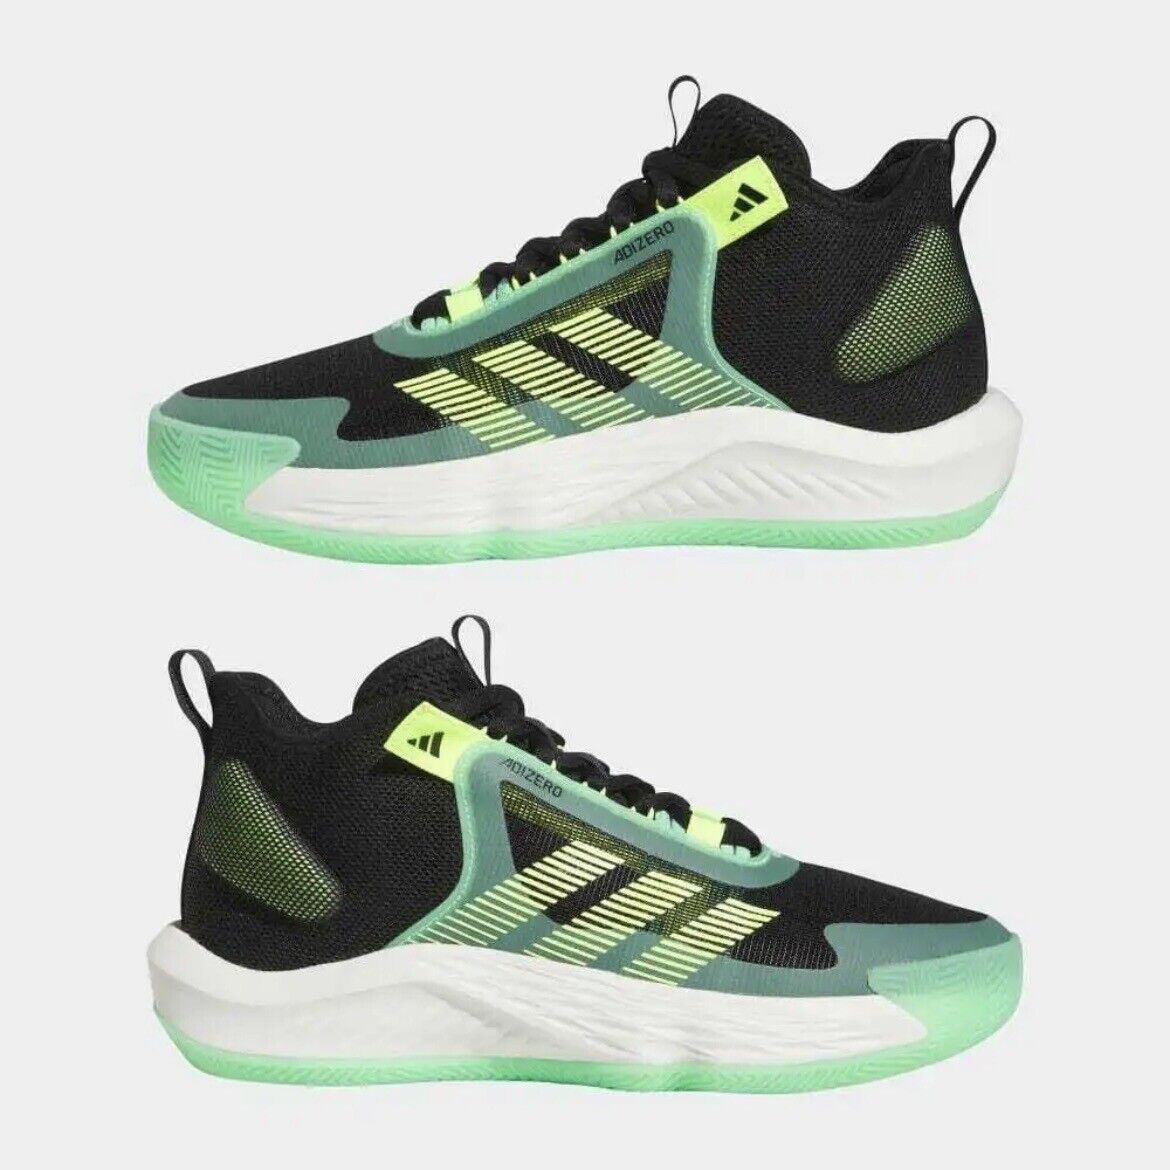 Glamorous adidas Adizero Select Green Black Basketball Shoes Training IE9263 Men Size 11.5 on eBay